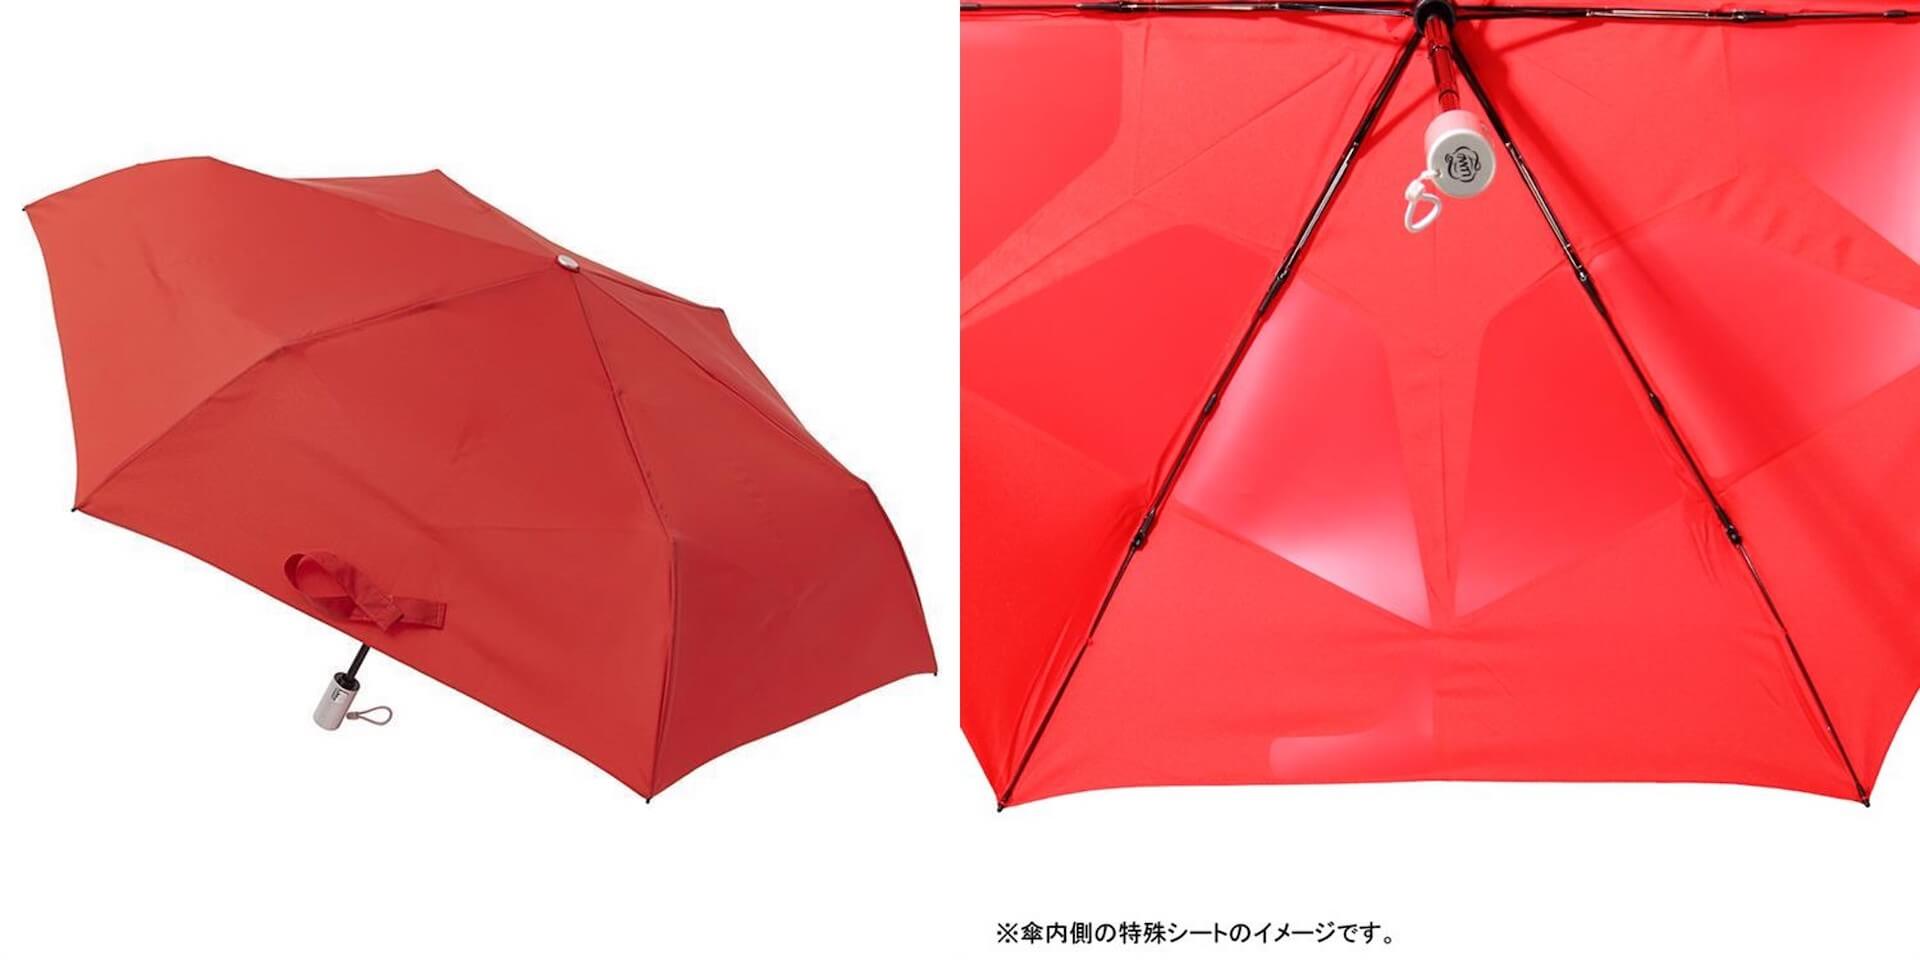 ソーシャルディスタンス確保や熱中症対策などができる最新機能を備えた傘がロフトにて展開中！新作をご紹介 lf200703_umbrella_04